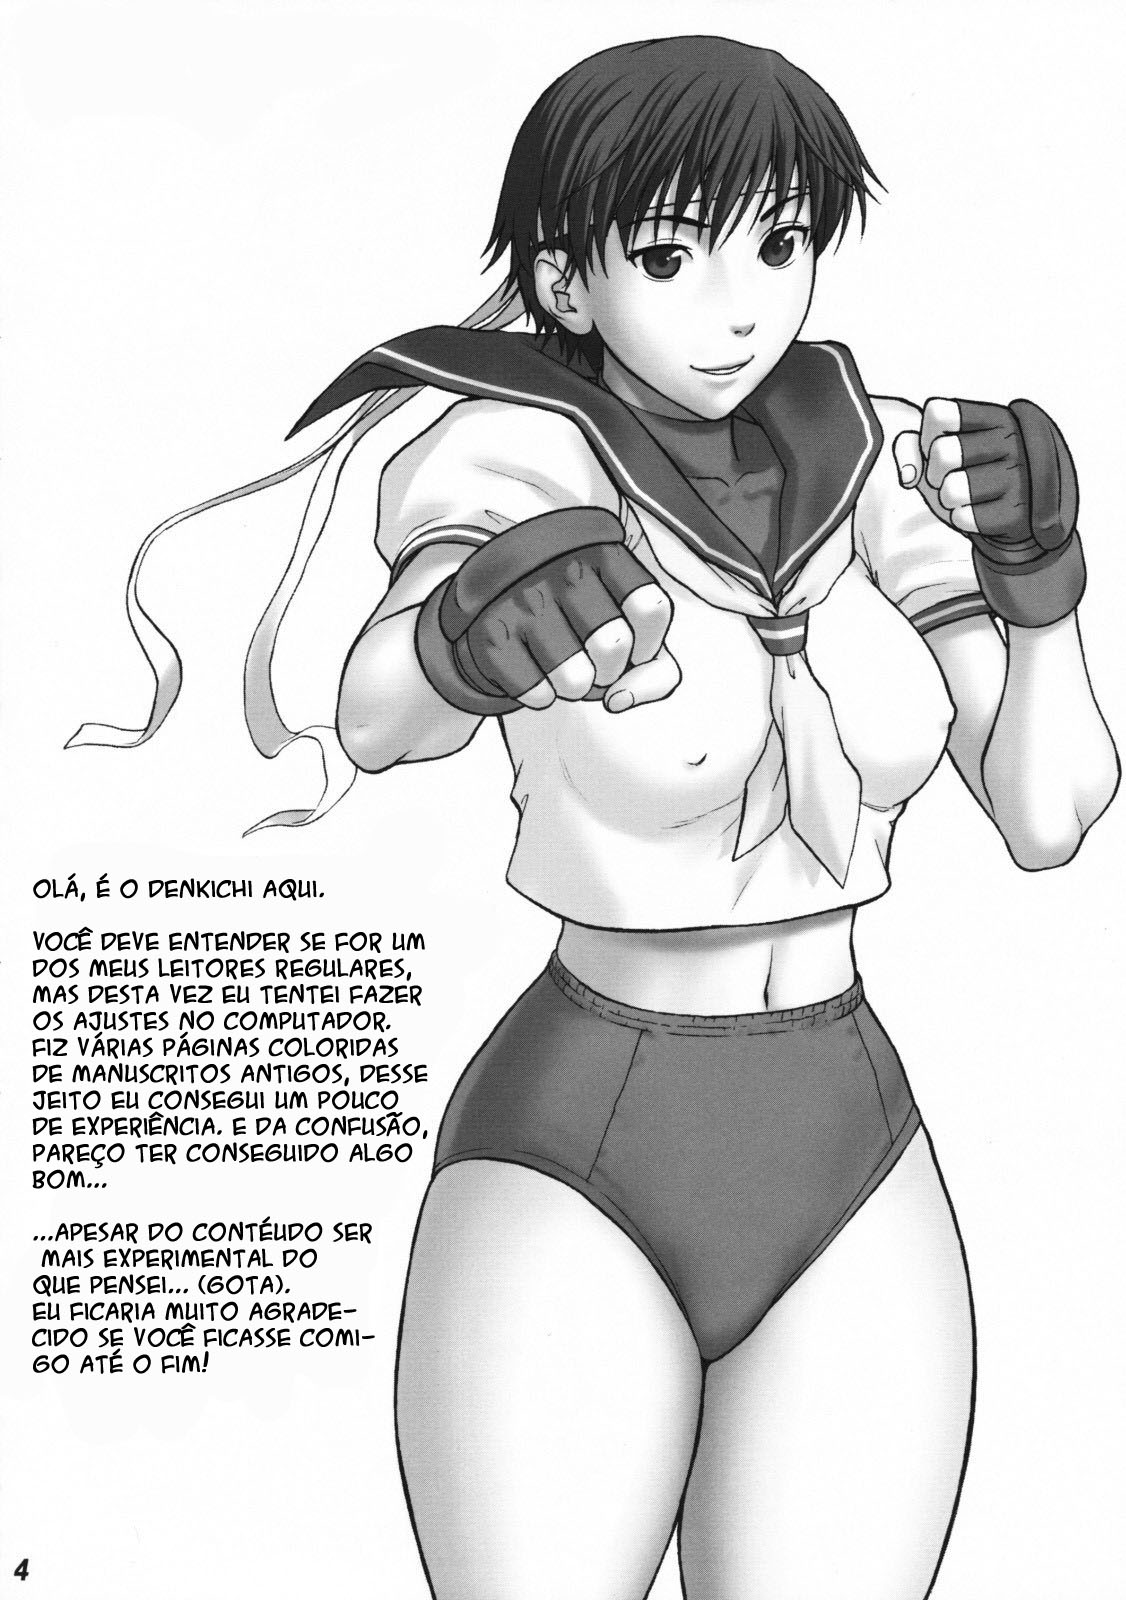 Ryu o admirador de bundas